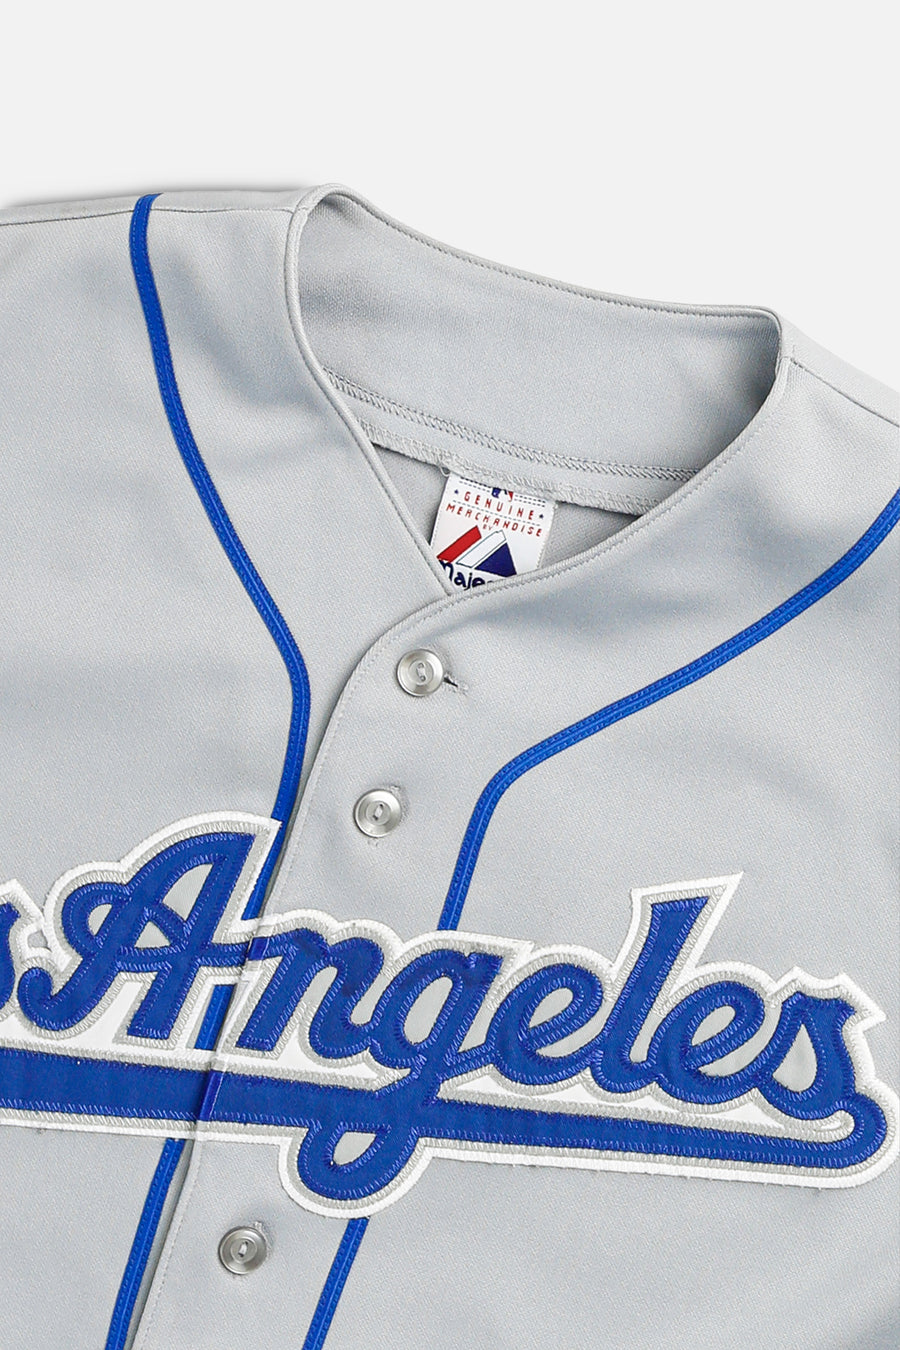 Vintage LA Dodgers MLB Jersey - M